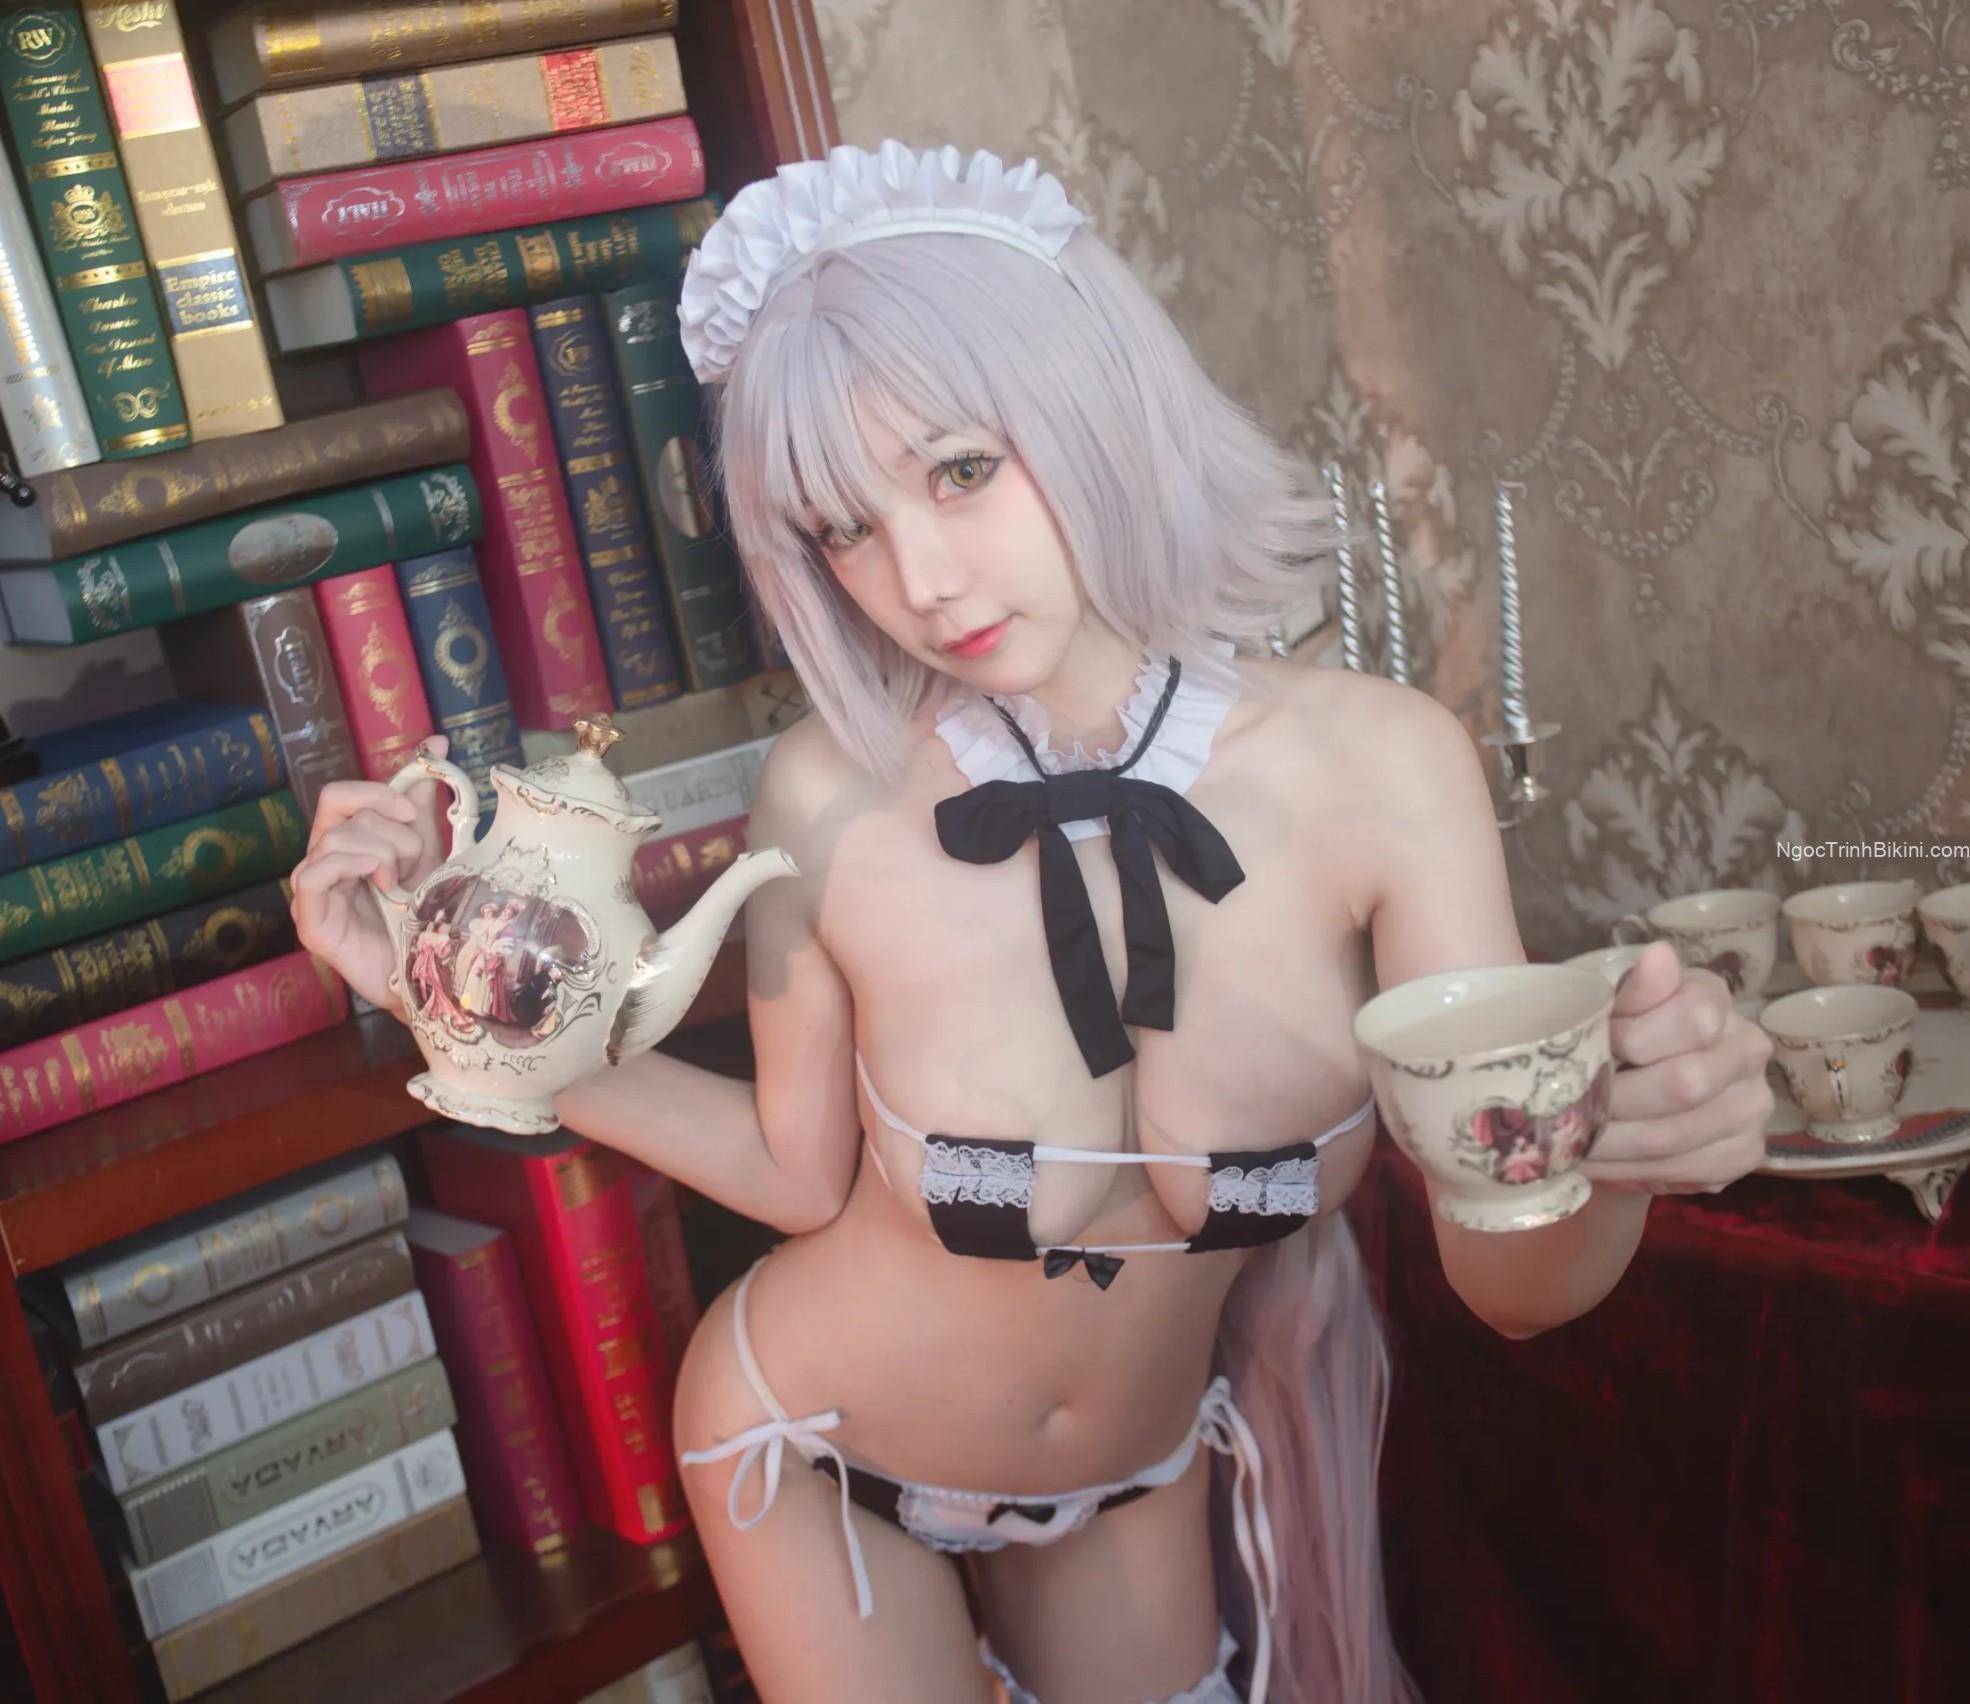 Anh muốn uống một chút trà chứ?